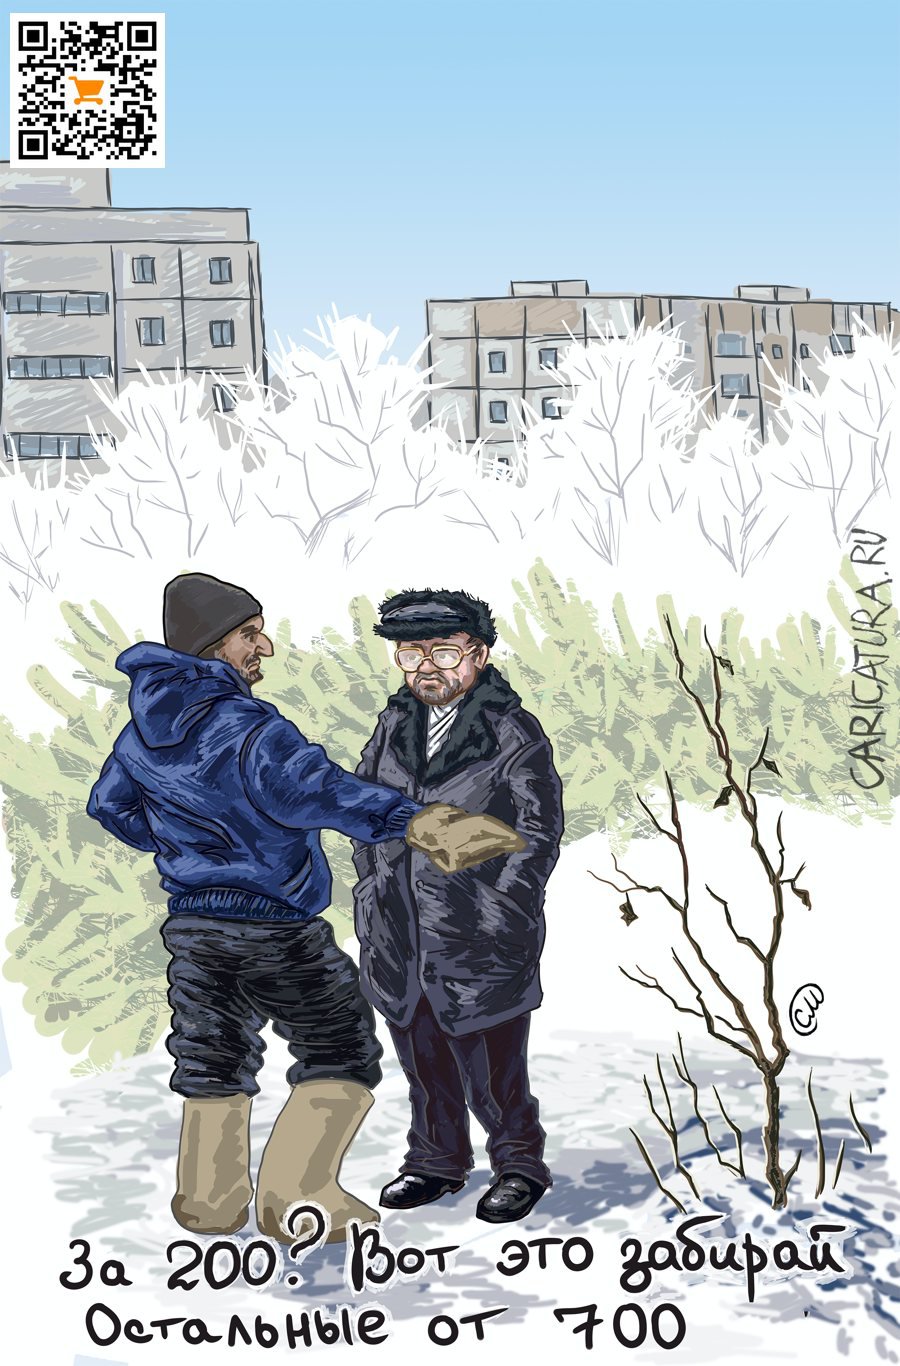 Карикатура "Купить ёлку", Михаил Стенников